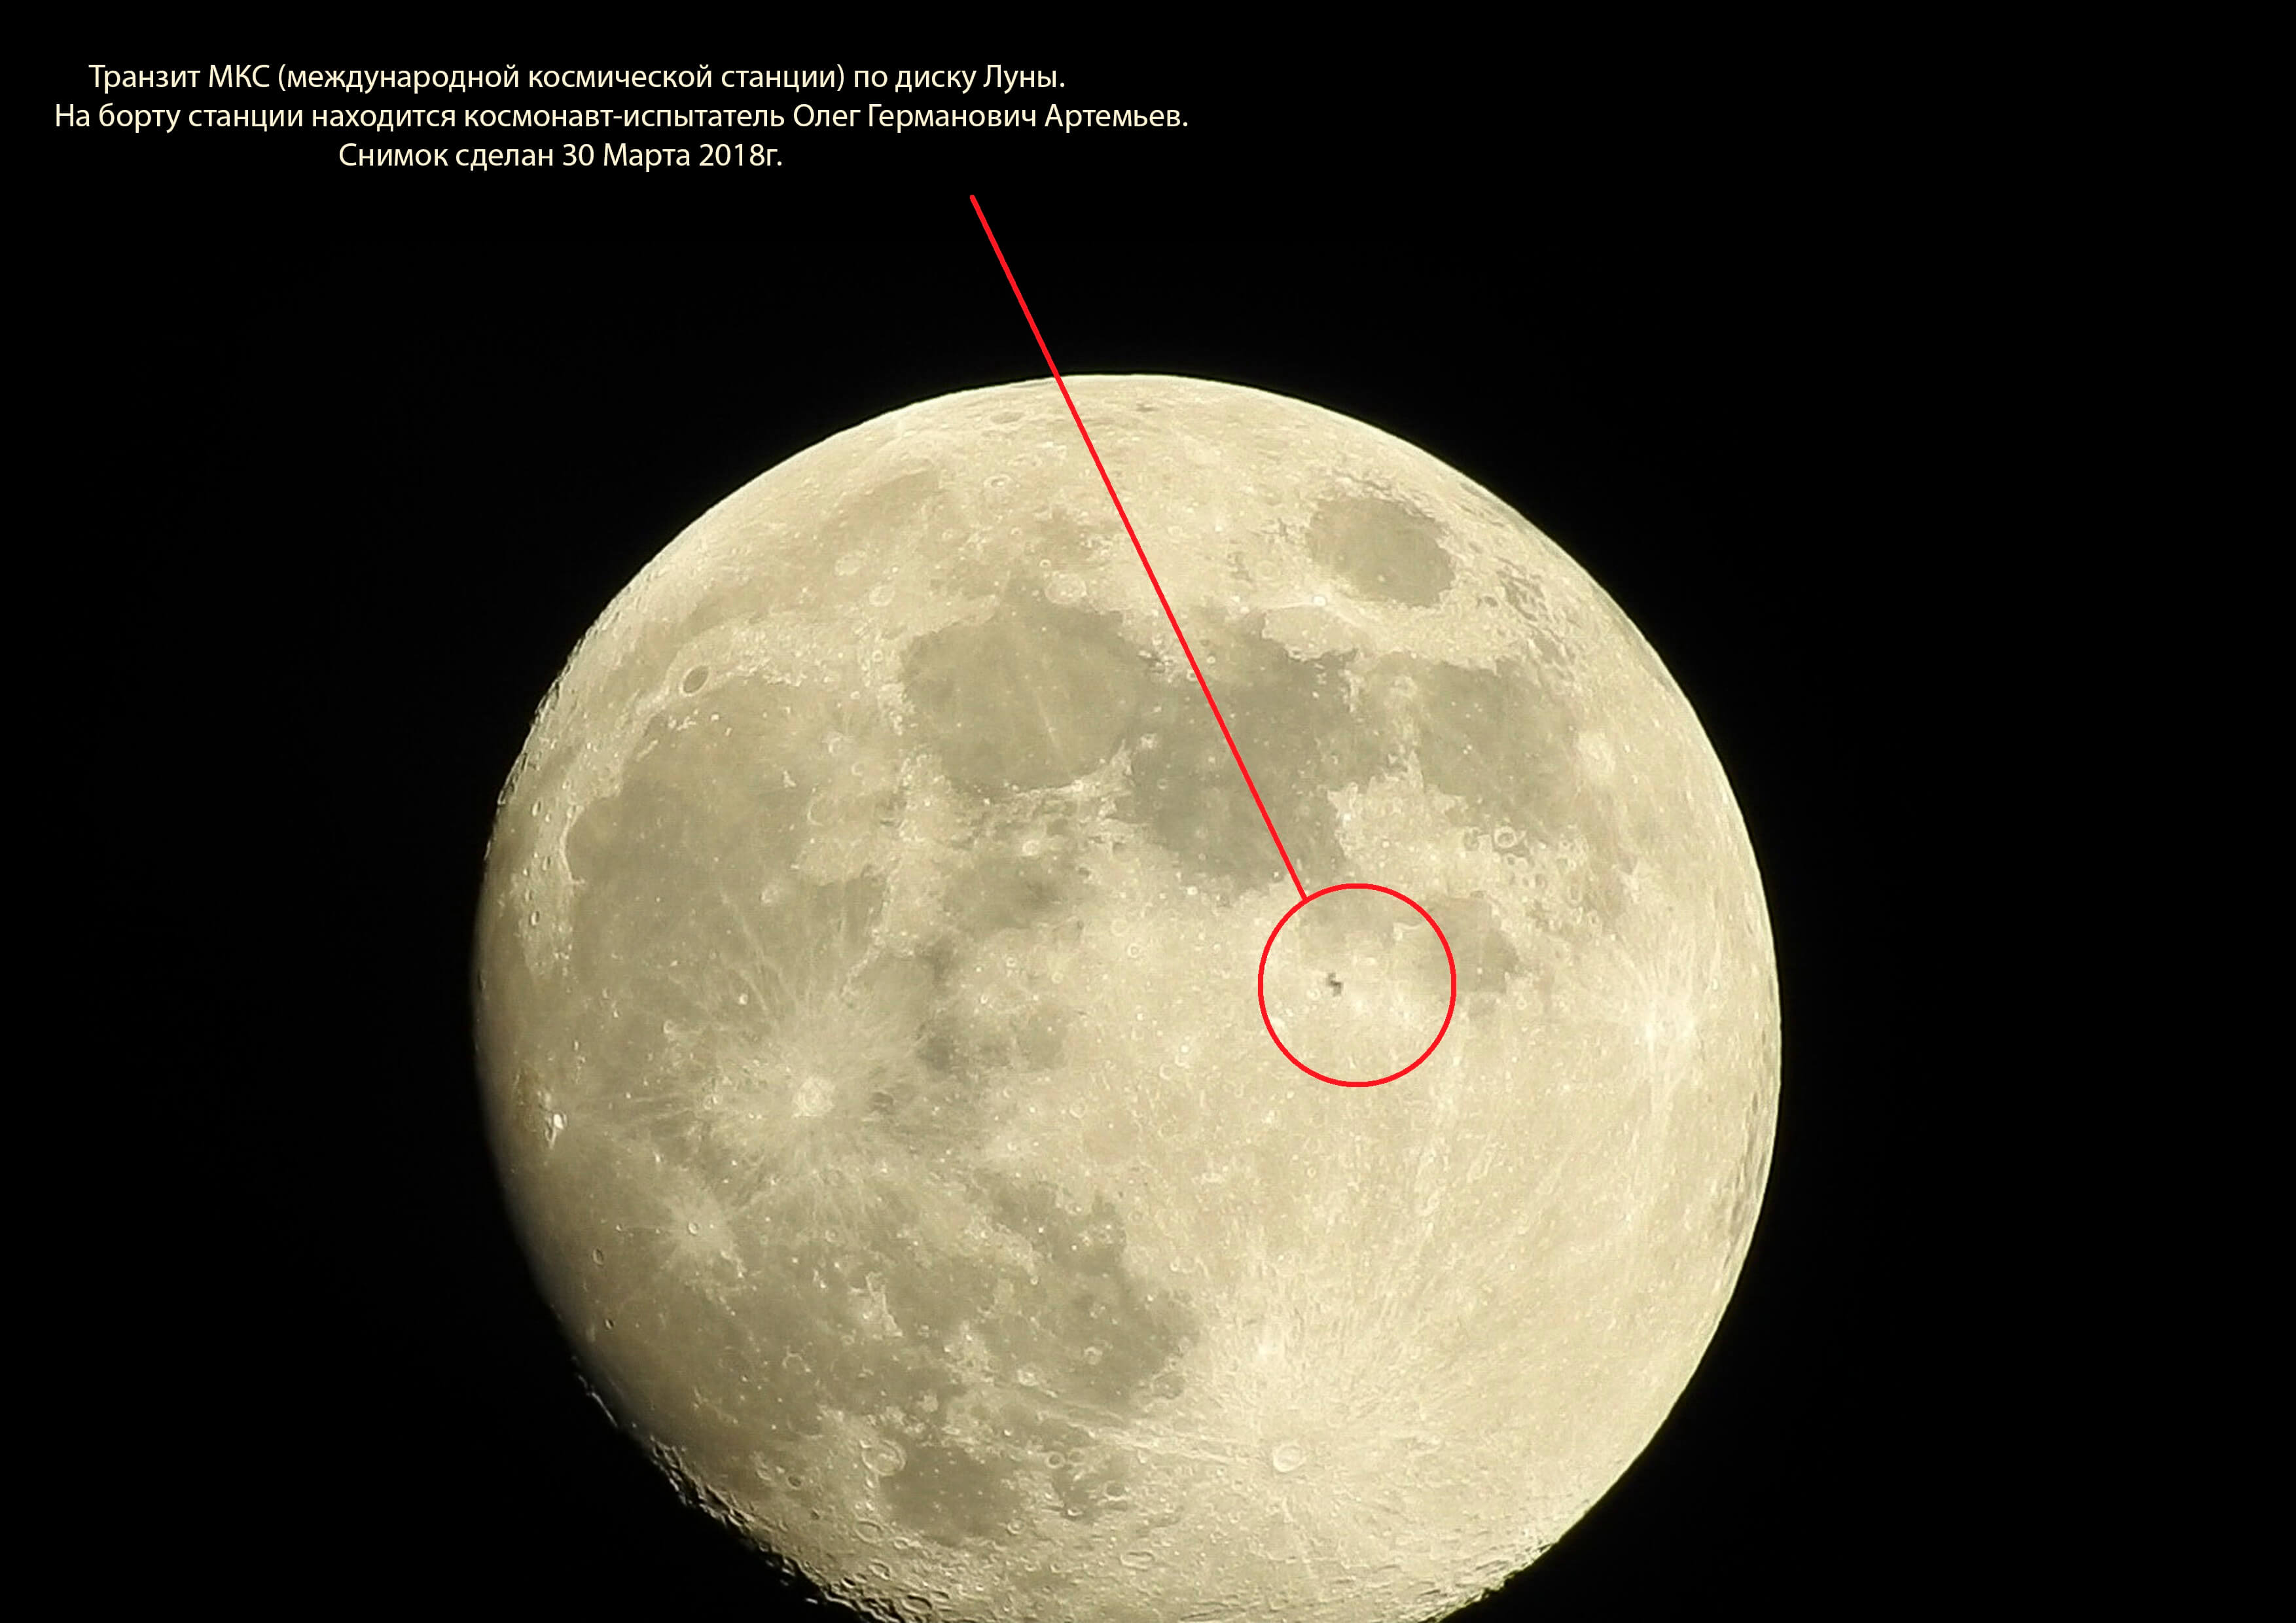 Что в центре луны. Транзит МКС по Луне. Транзит МКС по диску Луны. МКС на лунном диске. МКС на фоне Луны.